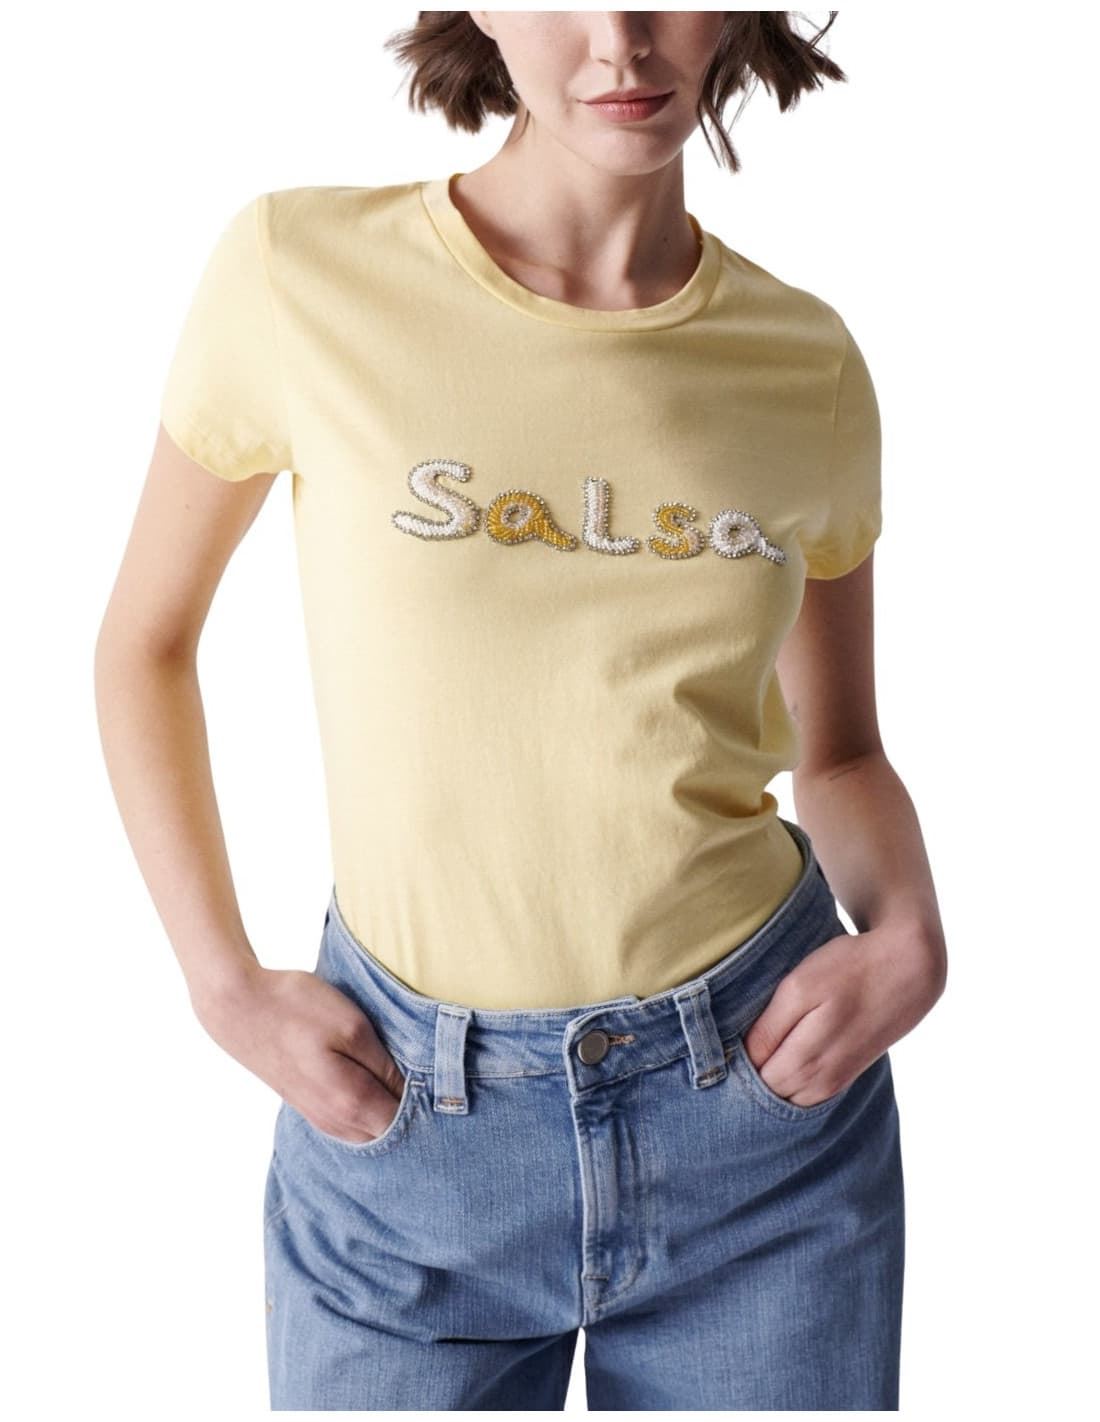 Camiseta SALSA 21002831 410 amarillo - Imagen 1